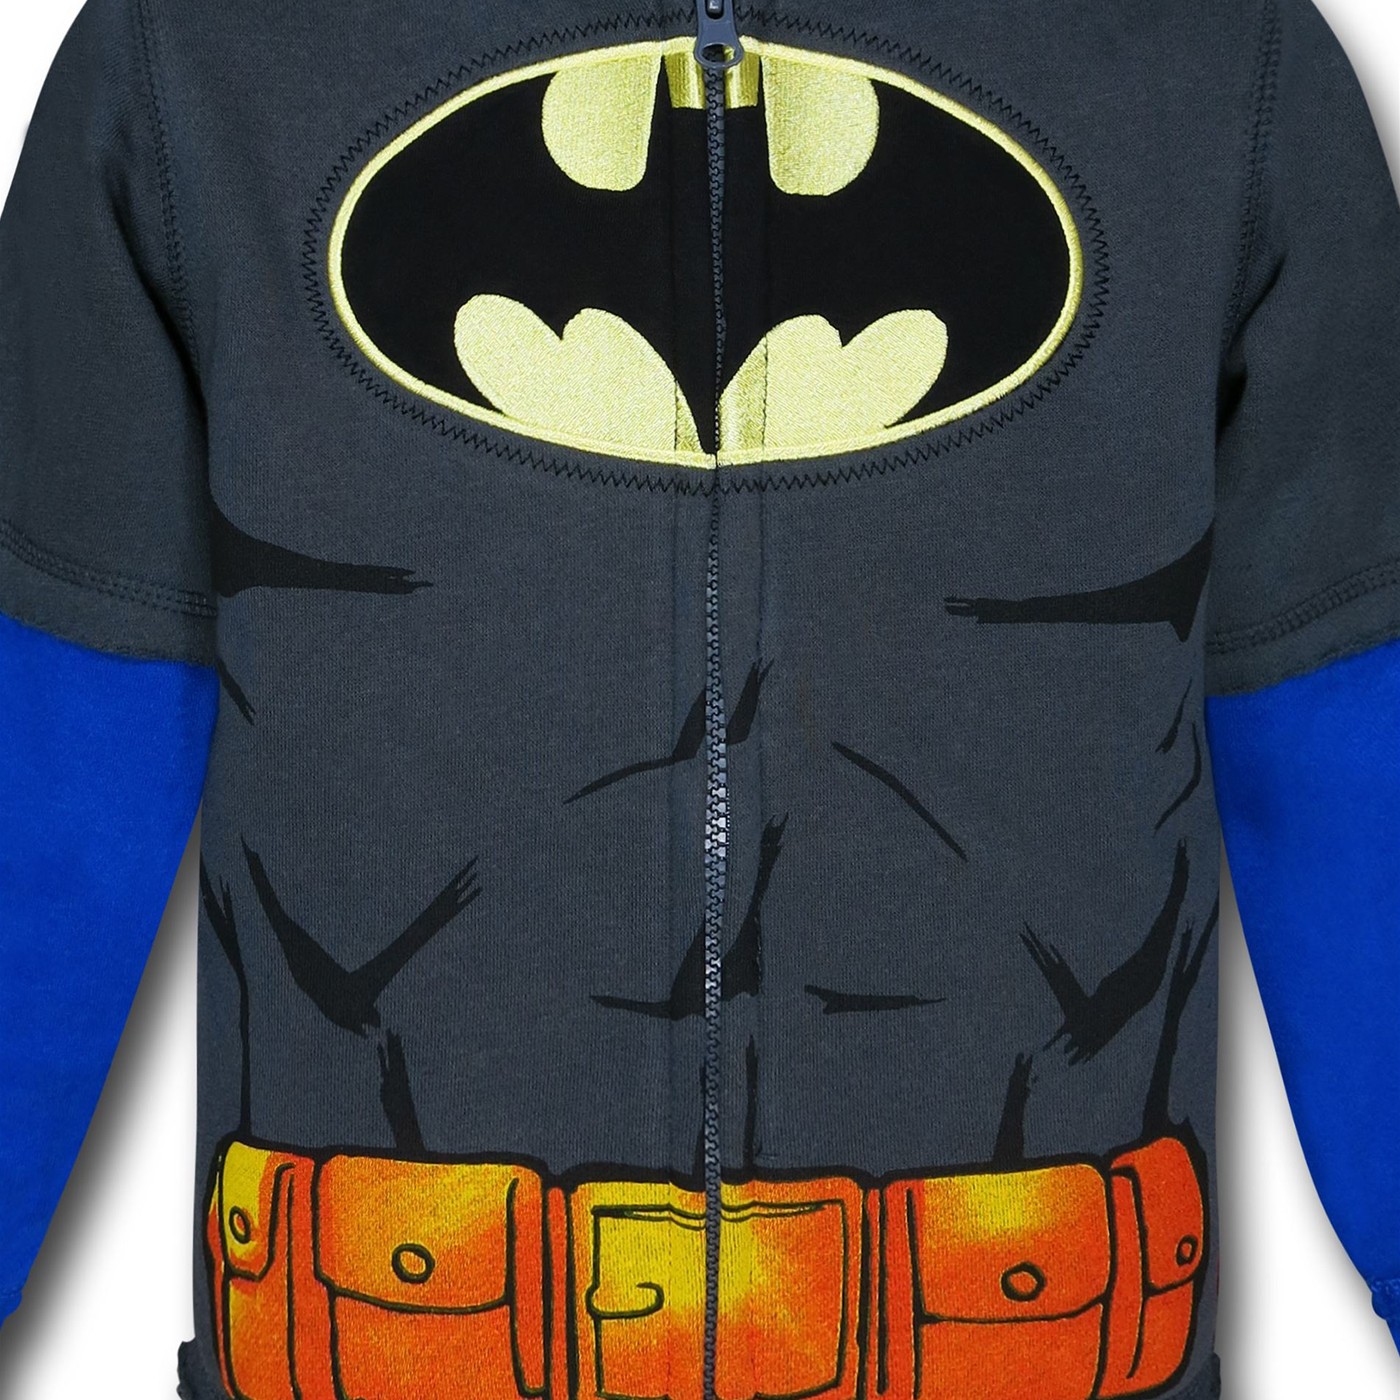 Batman Kids Muscle Costume Hoodie w/Cowl